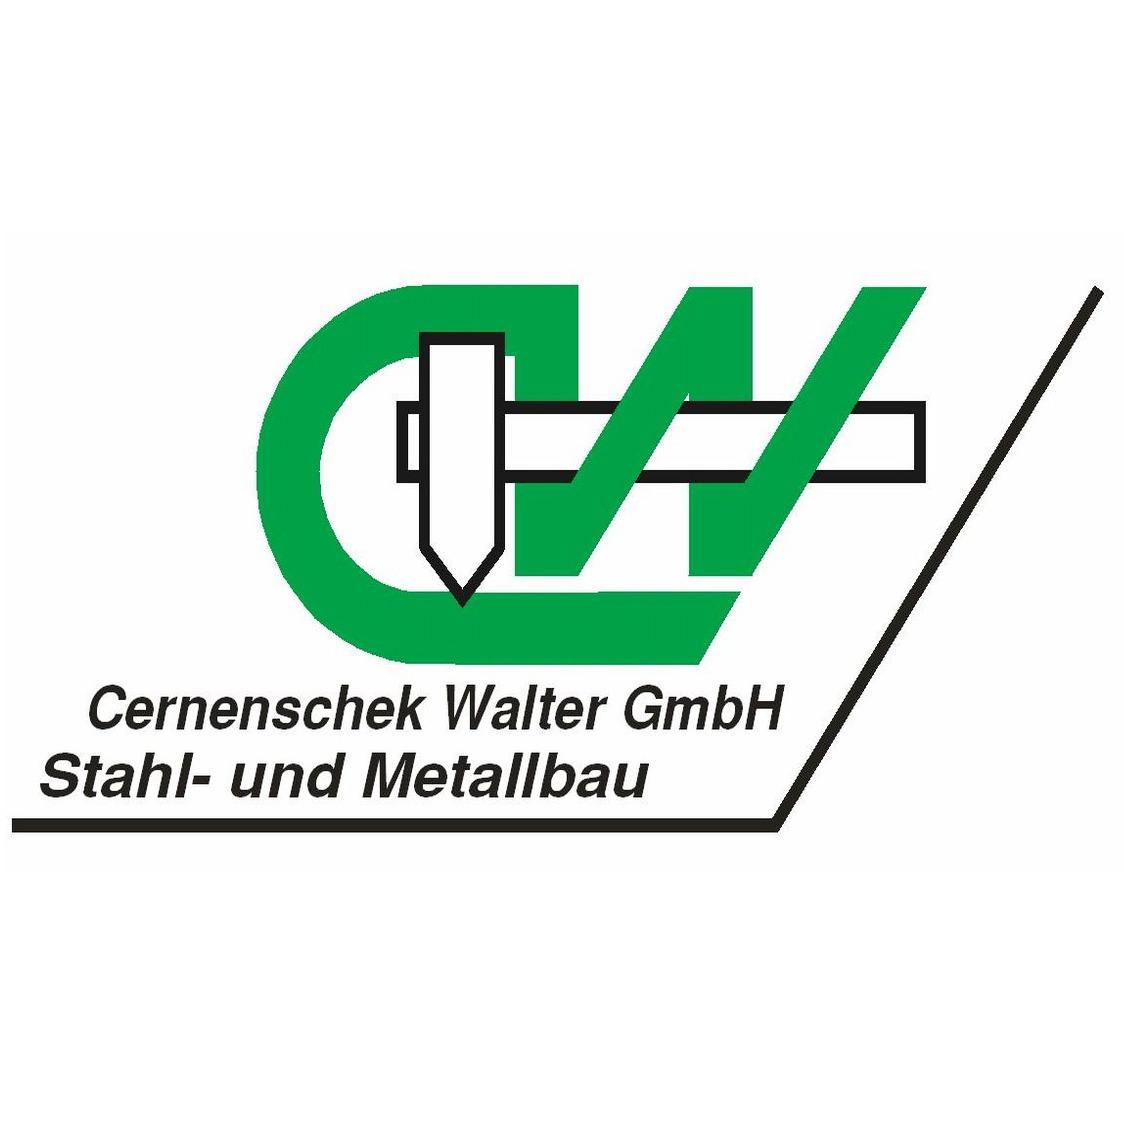 Cernenschek Walter GmbH in 6951 Lingenau Logo